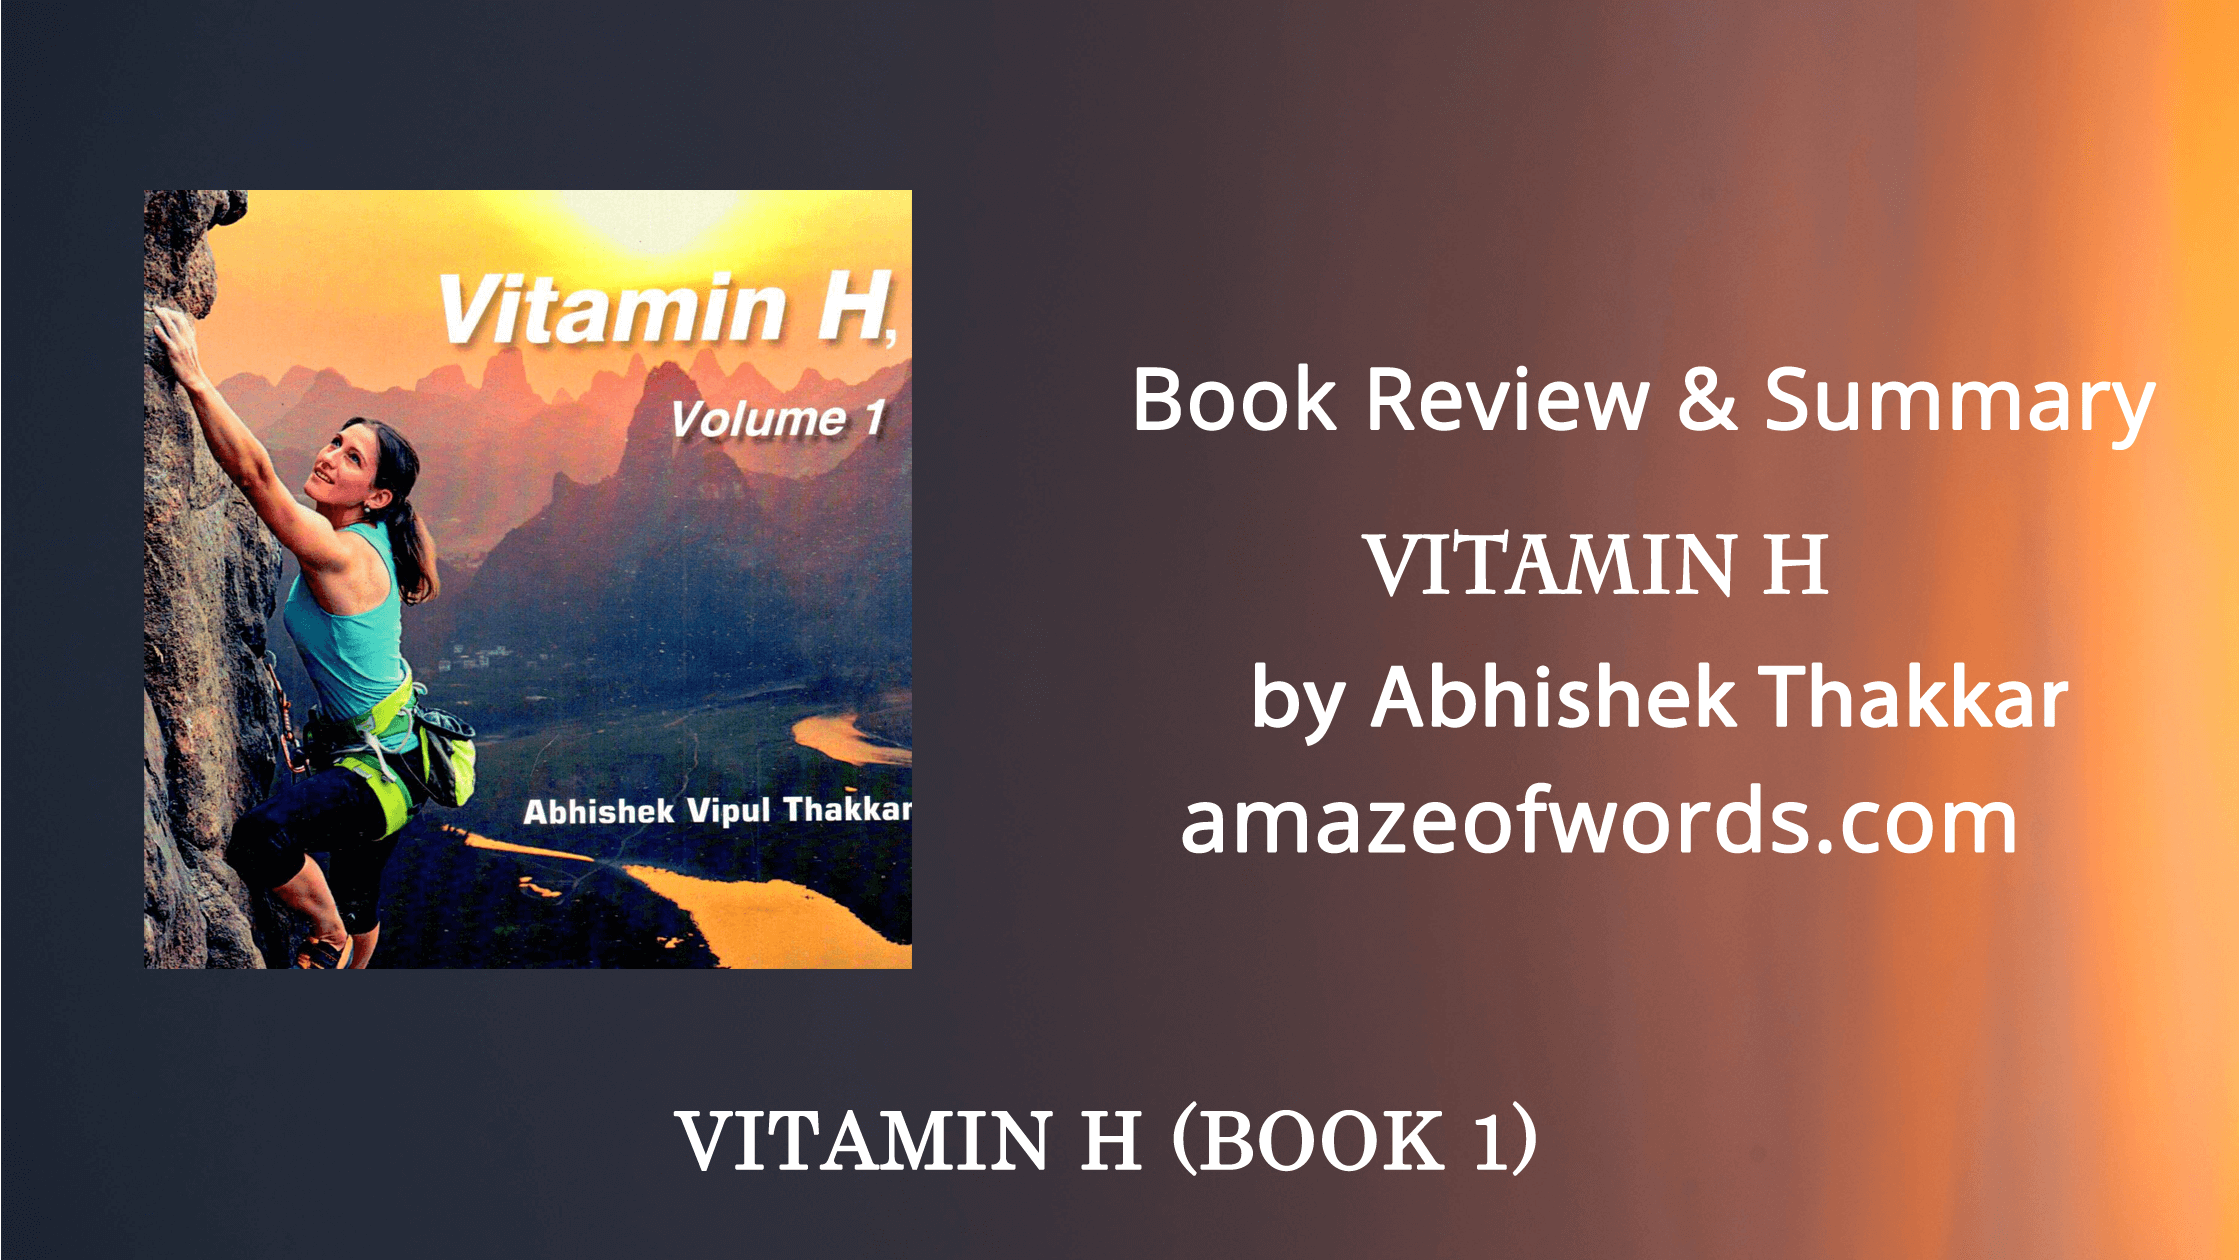 Vitamin H by Abhishek Thakkar — Book Review & Summary